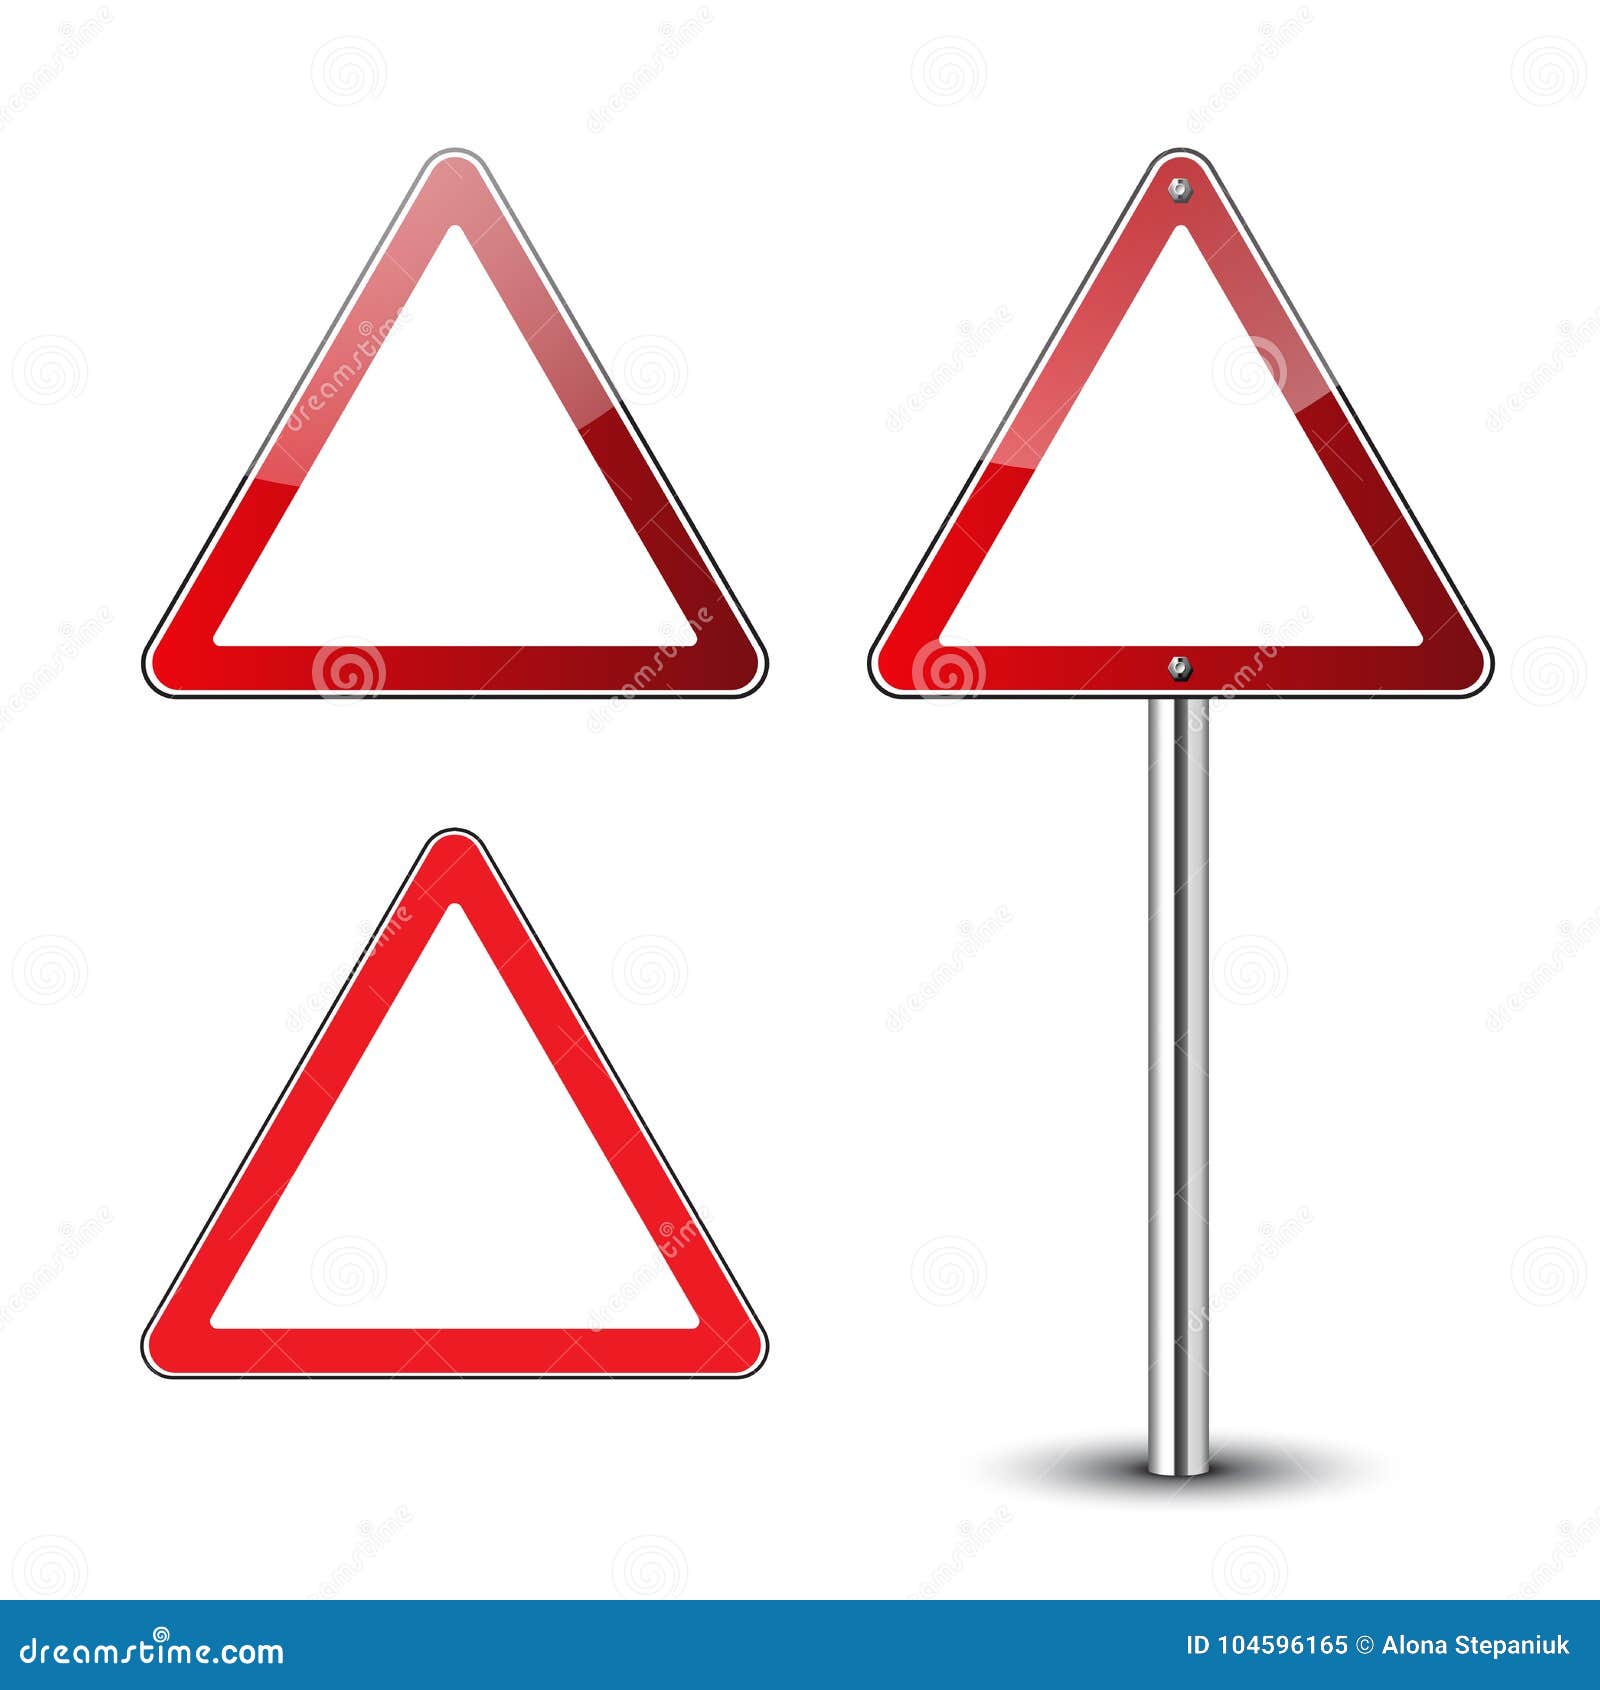 Треугольные знаки в красной рамке